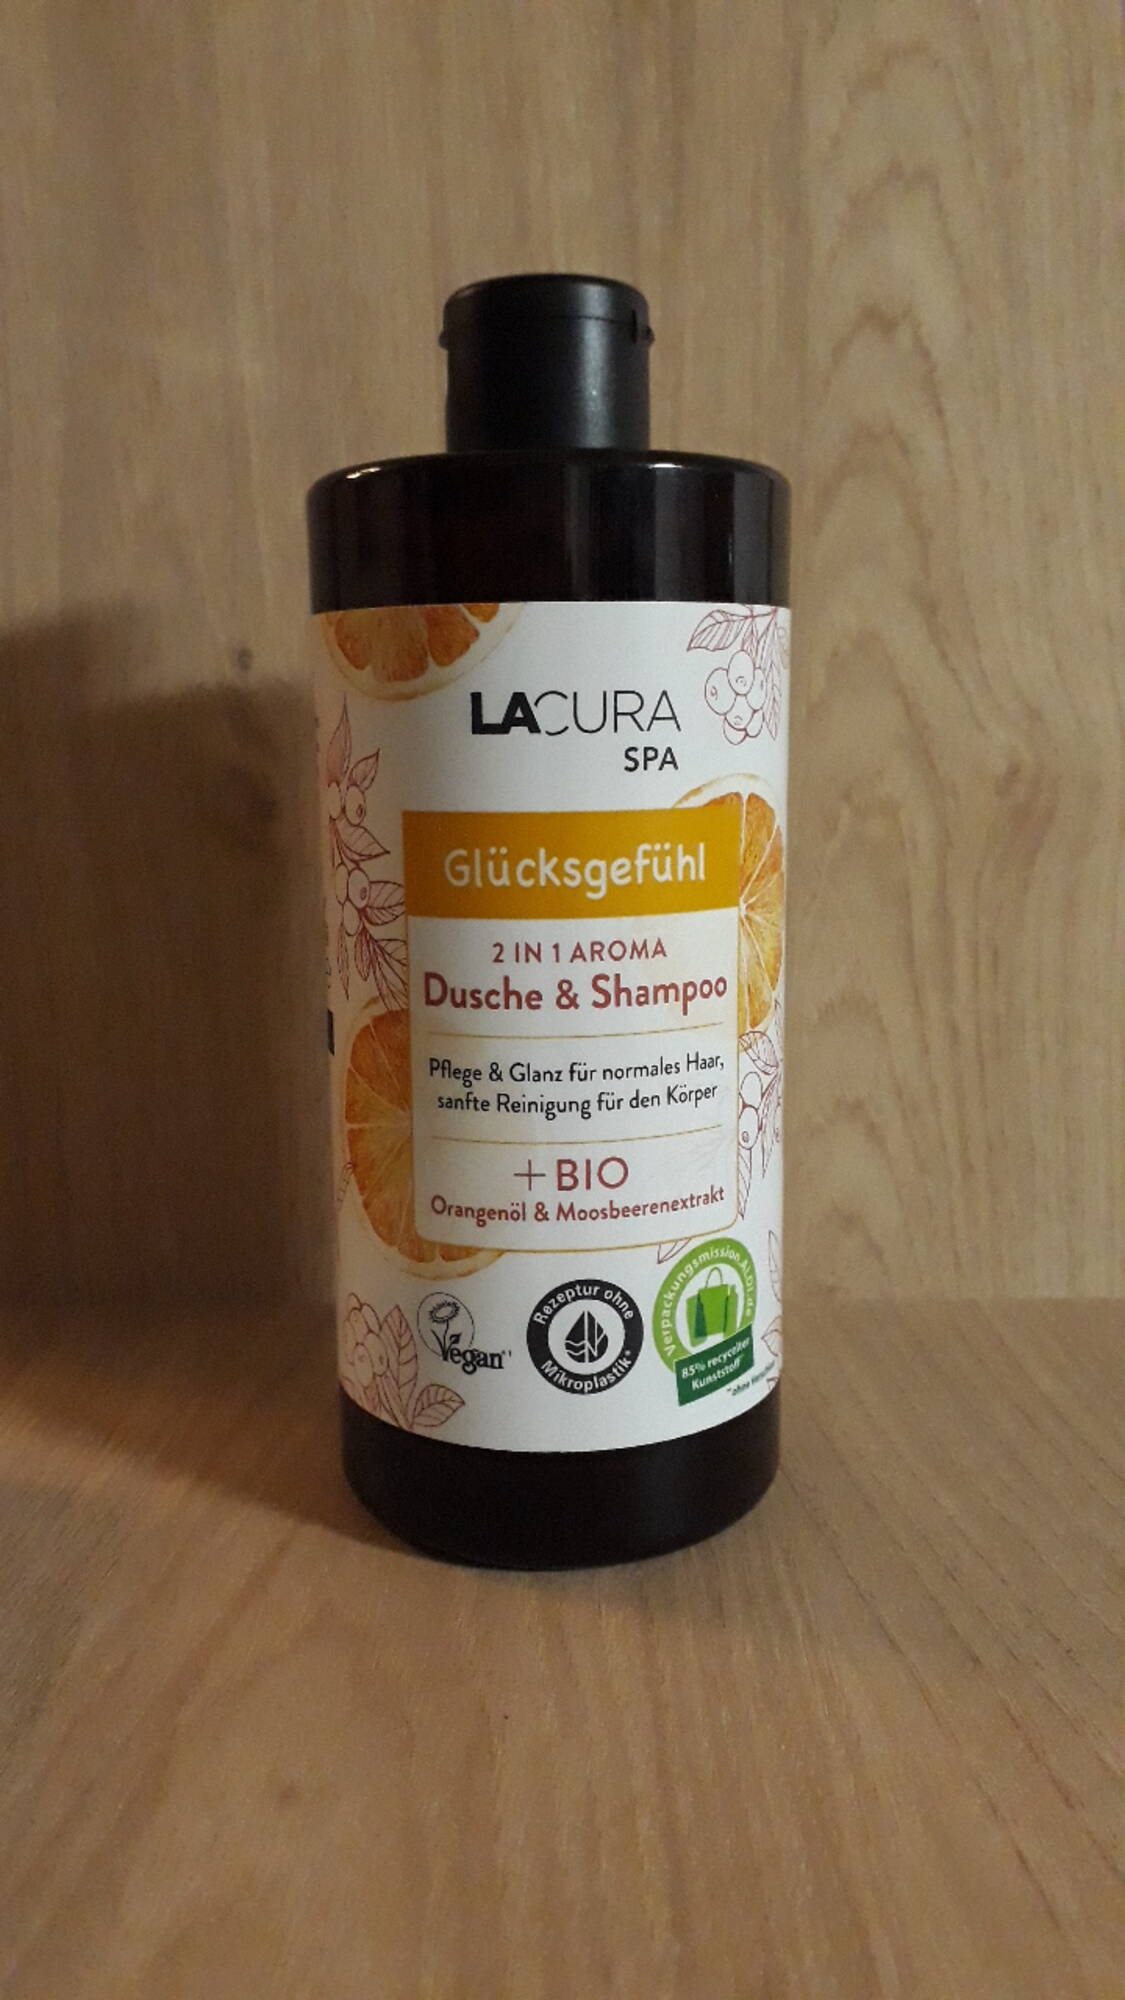 LACURA - 2 in 1 Aroma dusche & shampoo